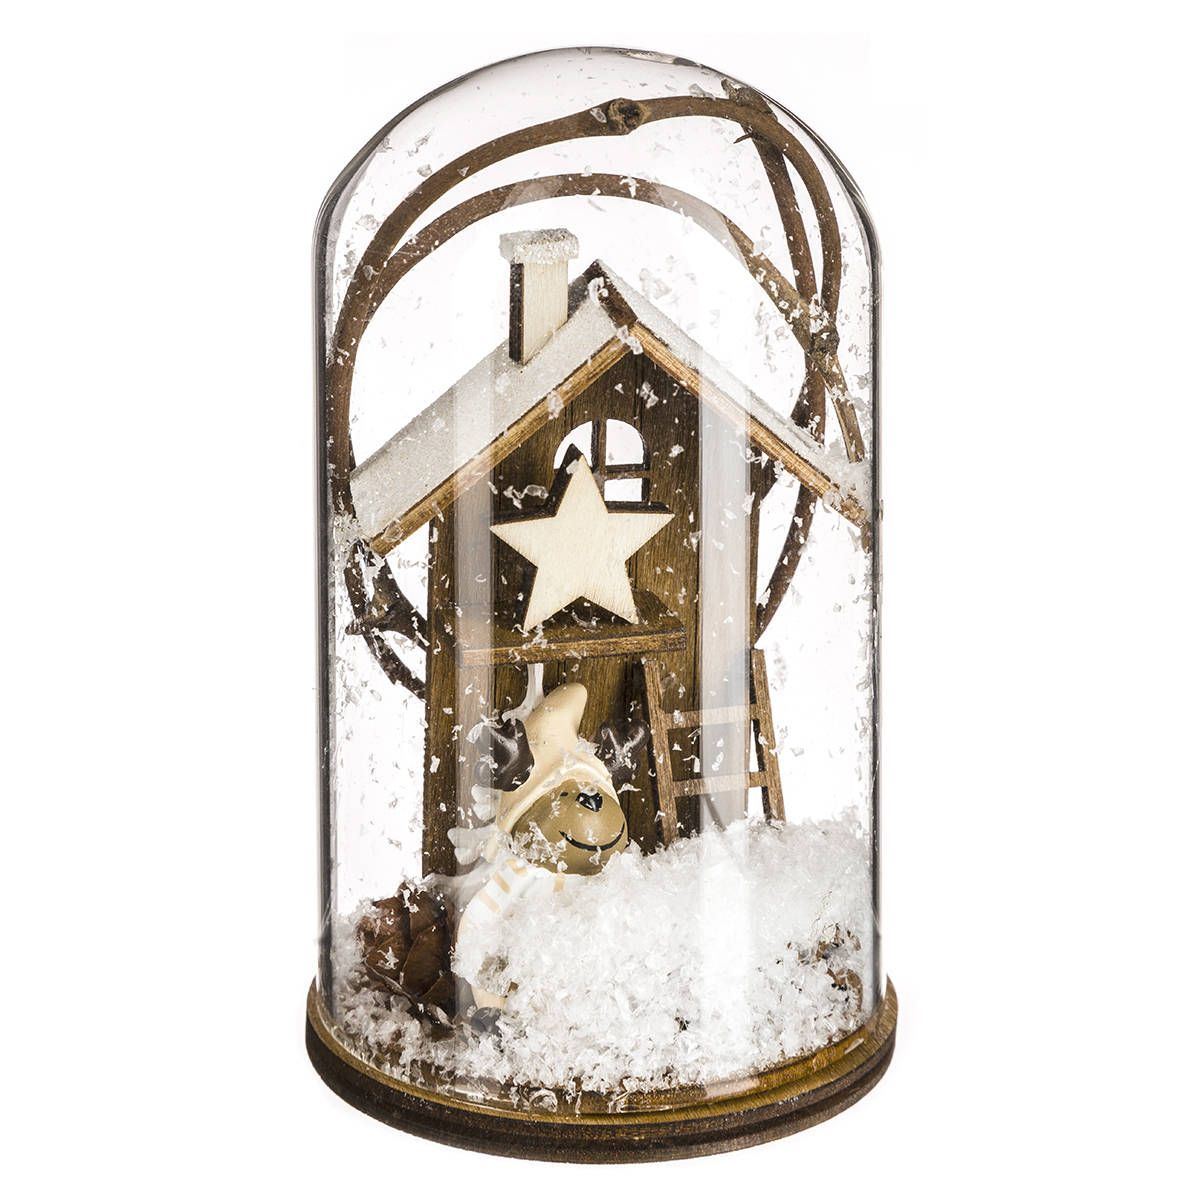 Atmosphera Skleněná kopule s dřevěným ornamentem, 12,5 cm, vánoční motiv - EMAKO.CZ s.r.o.